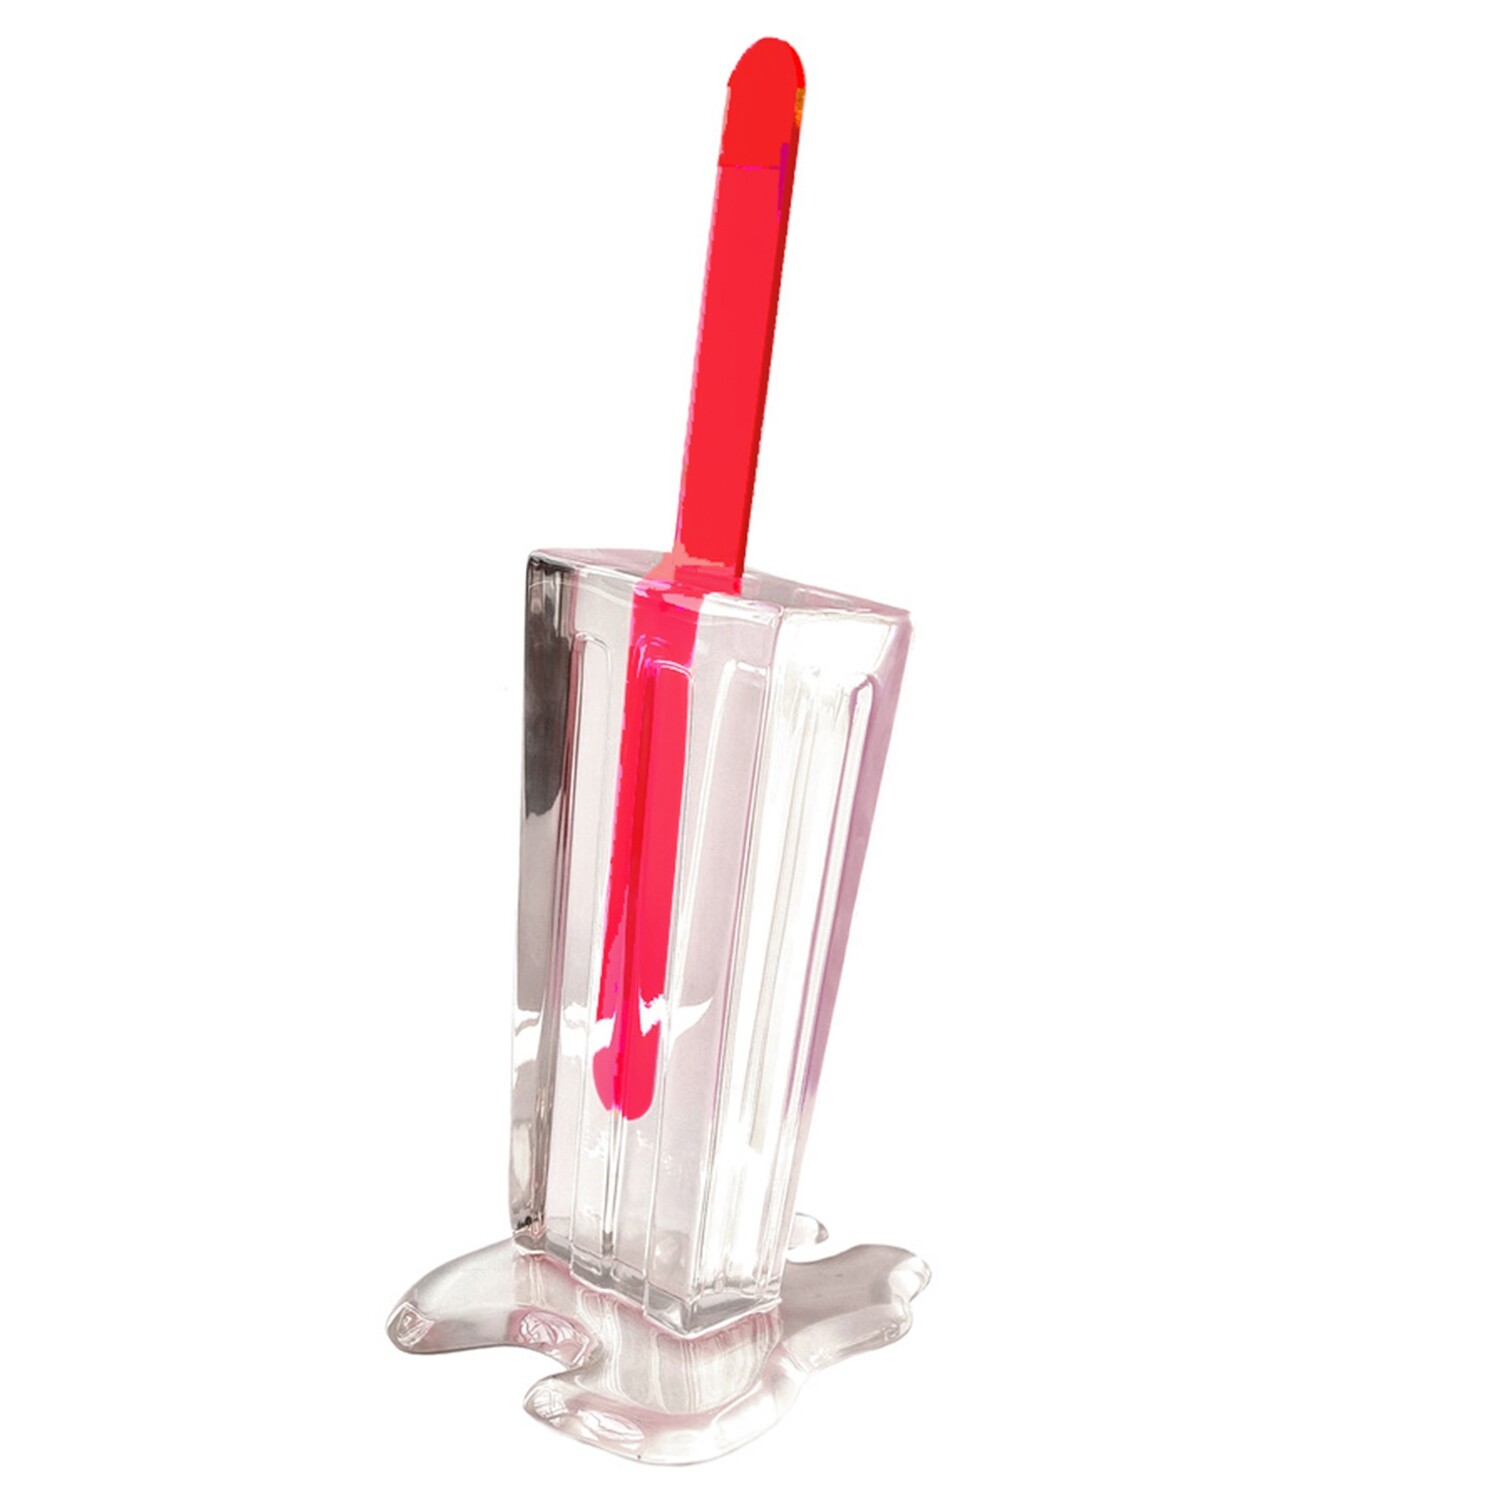 Melting Popsicle Art - Crystal Clear Pop, 18" RED - Original Melting Pops